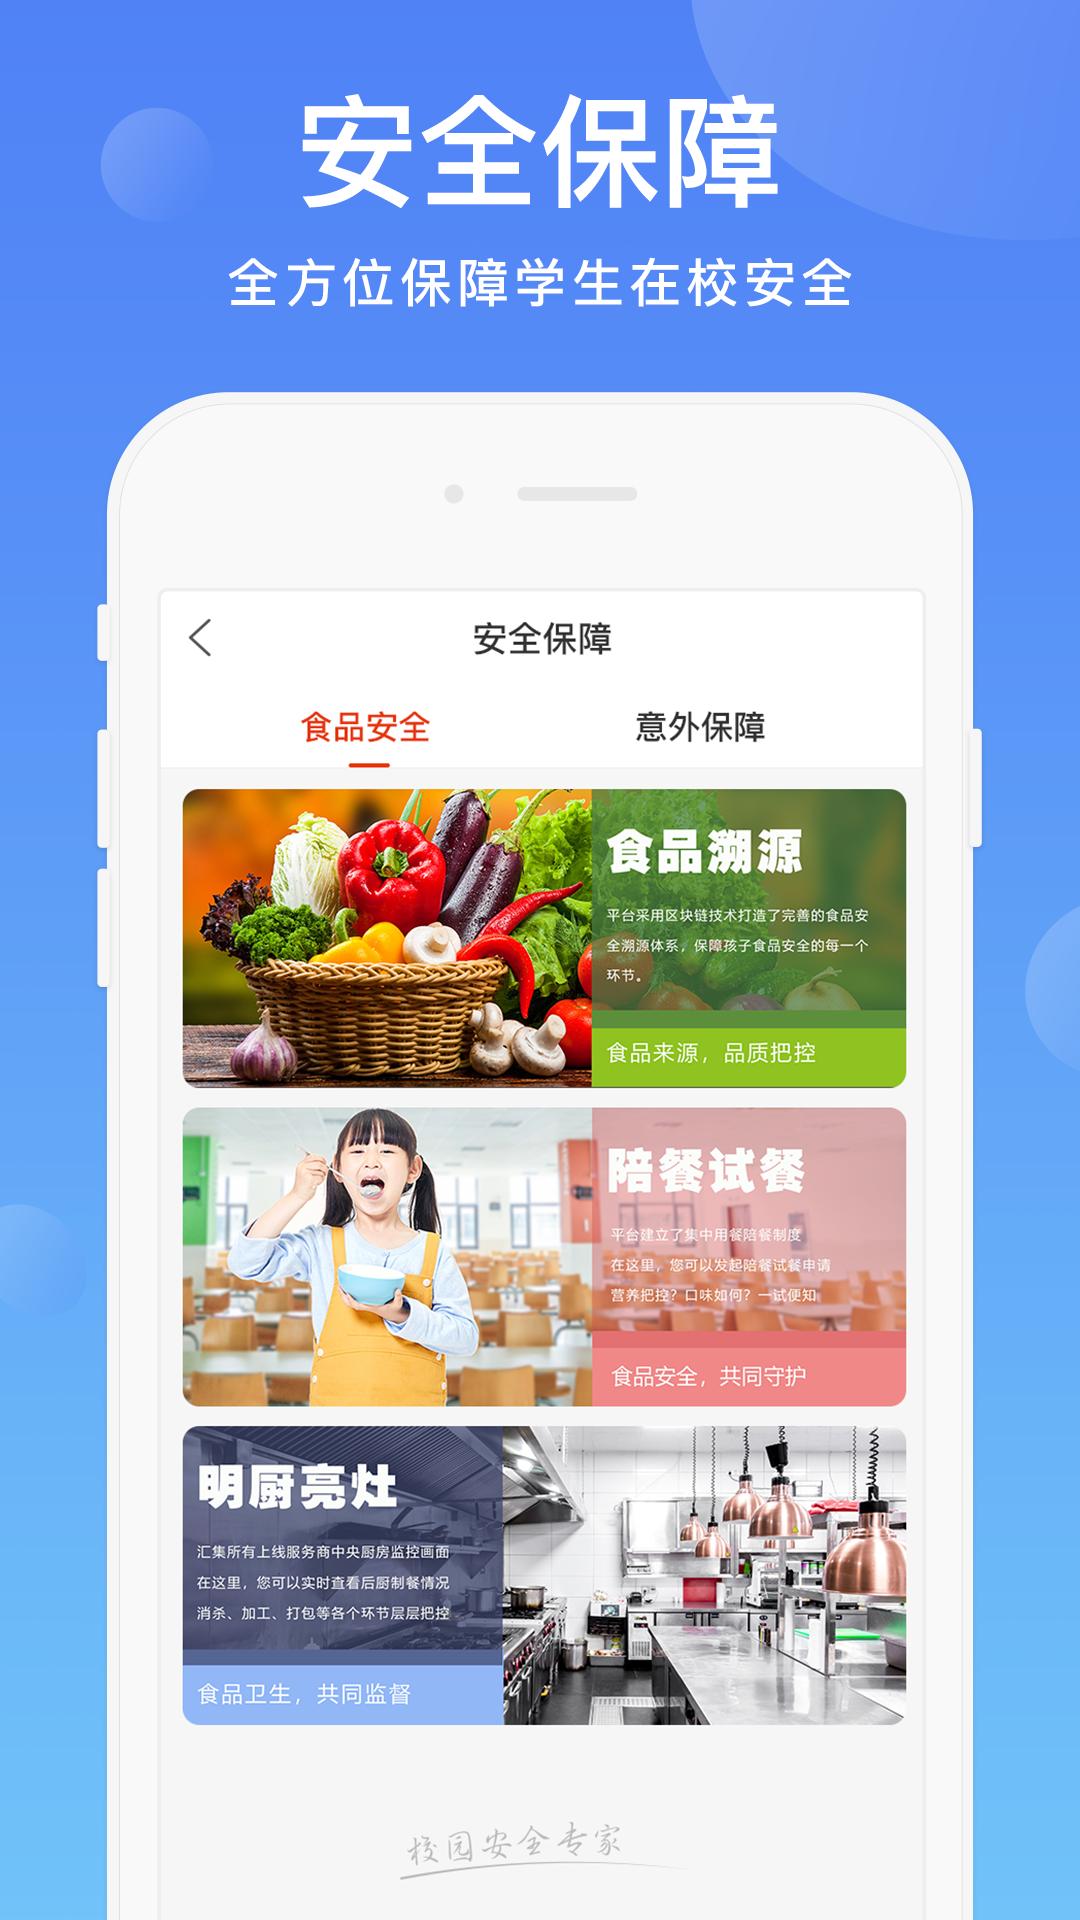 阳光校园空中黔课小学六年级下册动静app图2: